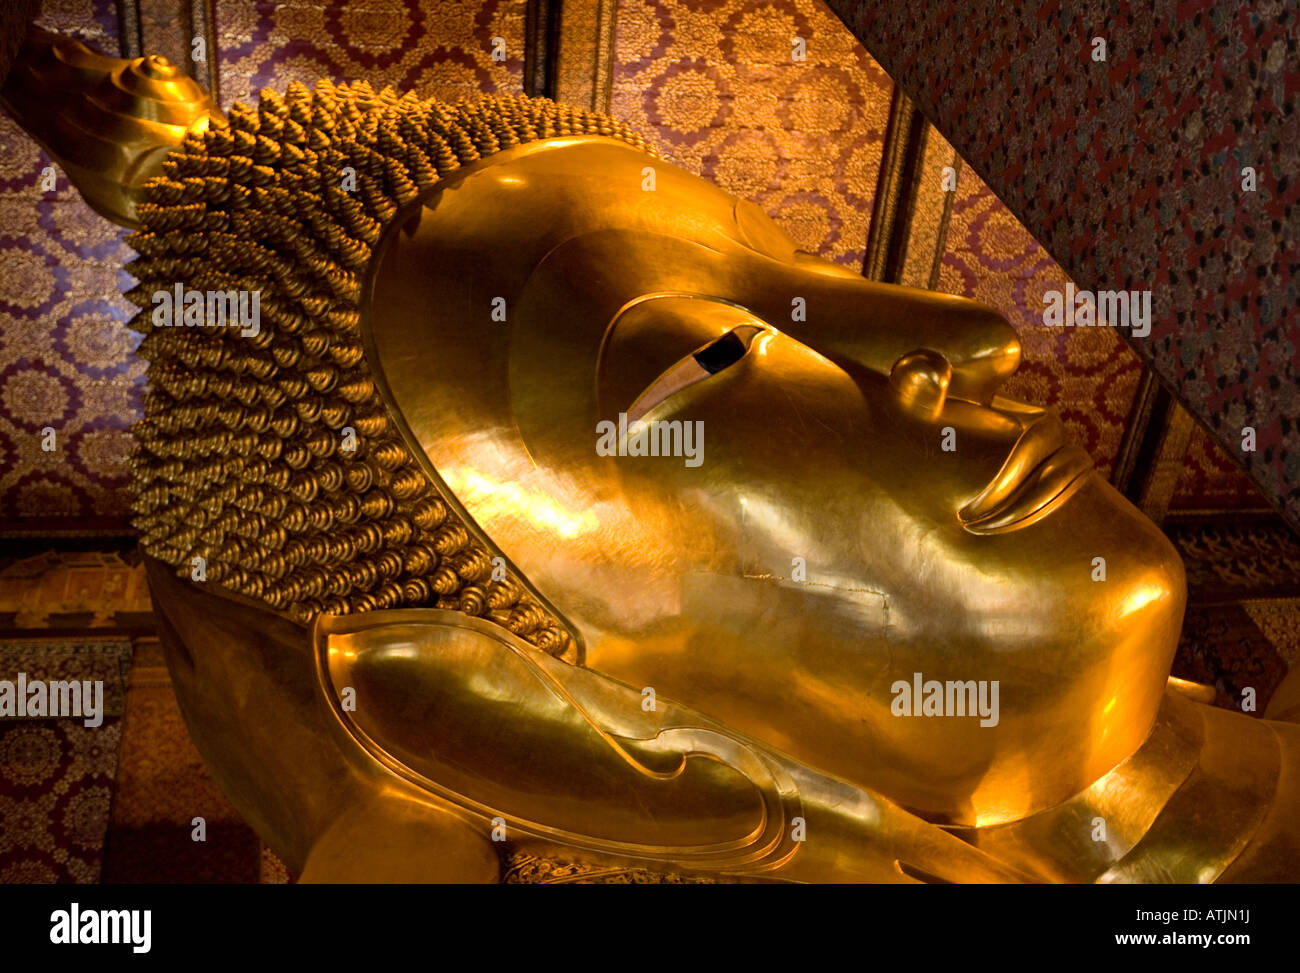 Golden Buddha couché Wat Po Bangkok Thailande Asie du sud-est Banque D'Images